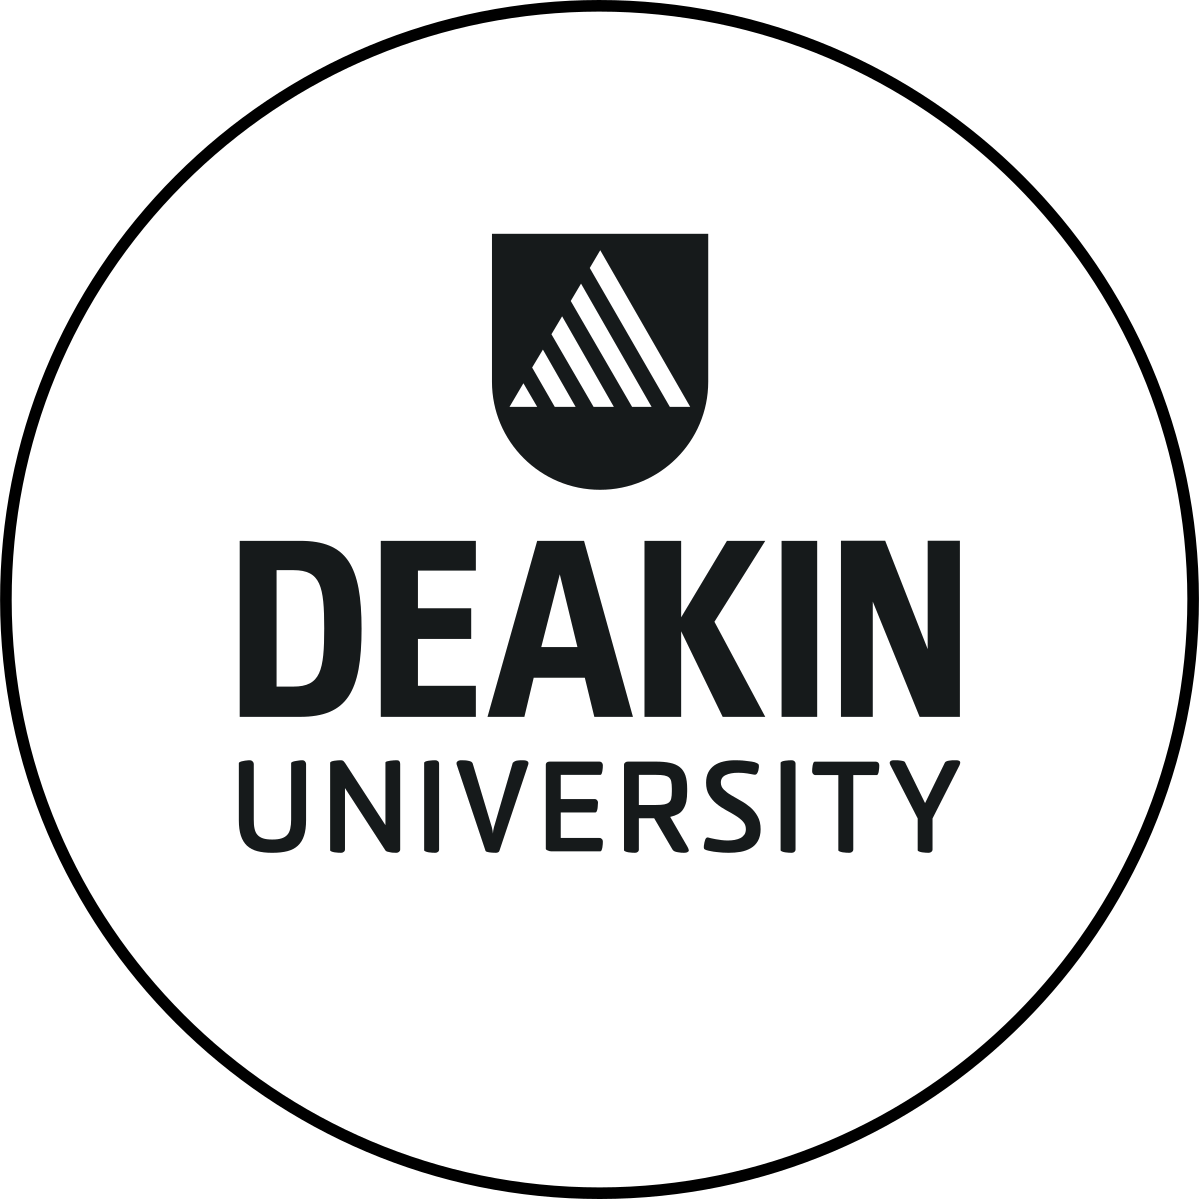 جامعة ديكين في مسار امداد